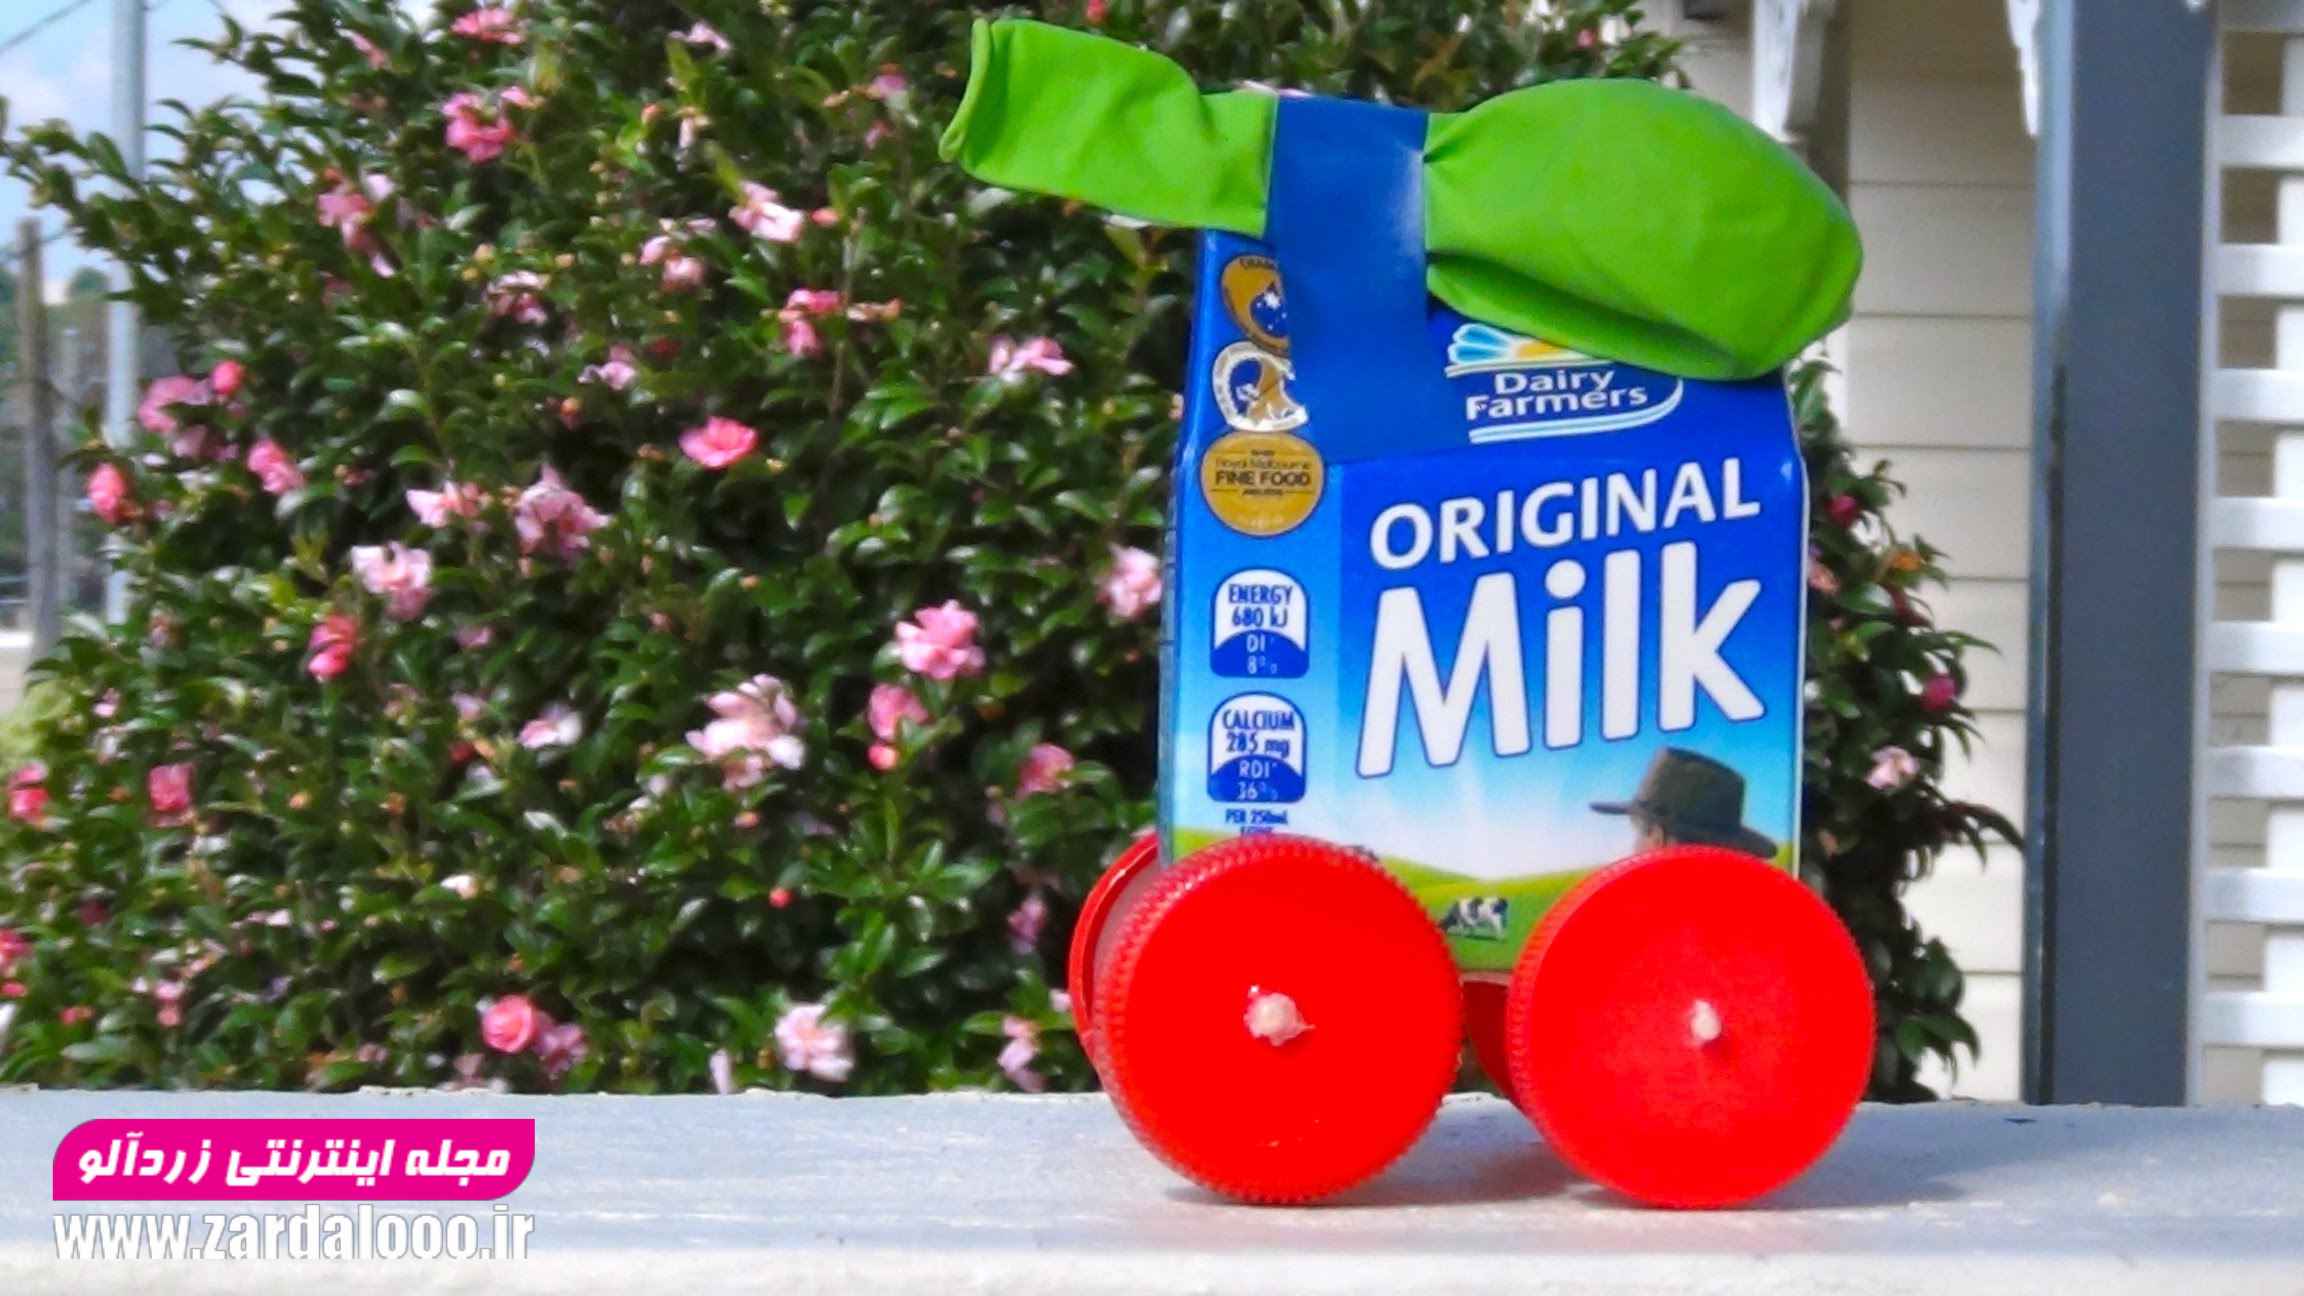 ساخت کاردستی های جالب با پاکت شیر برای کودکان